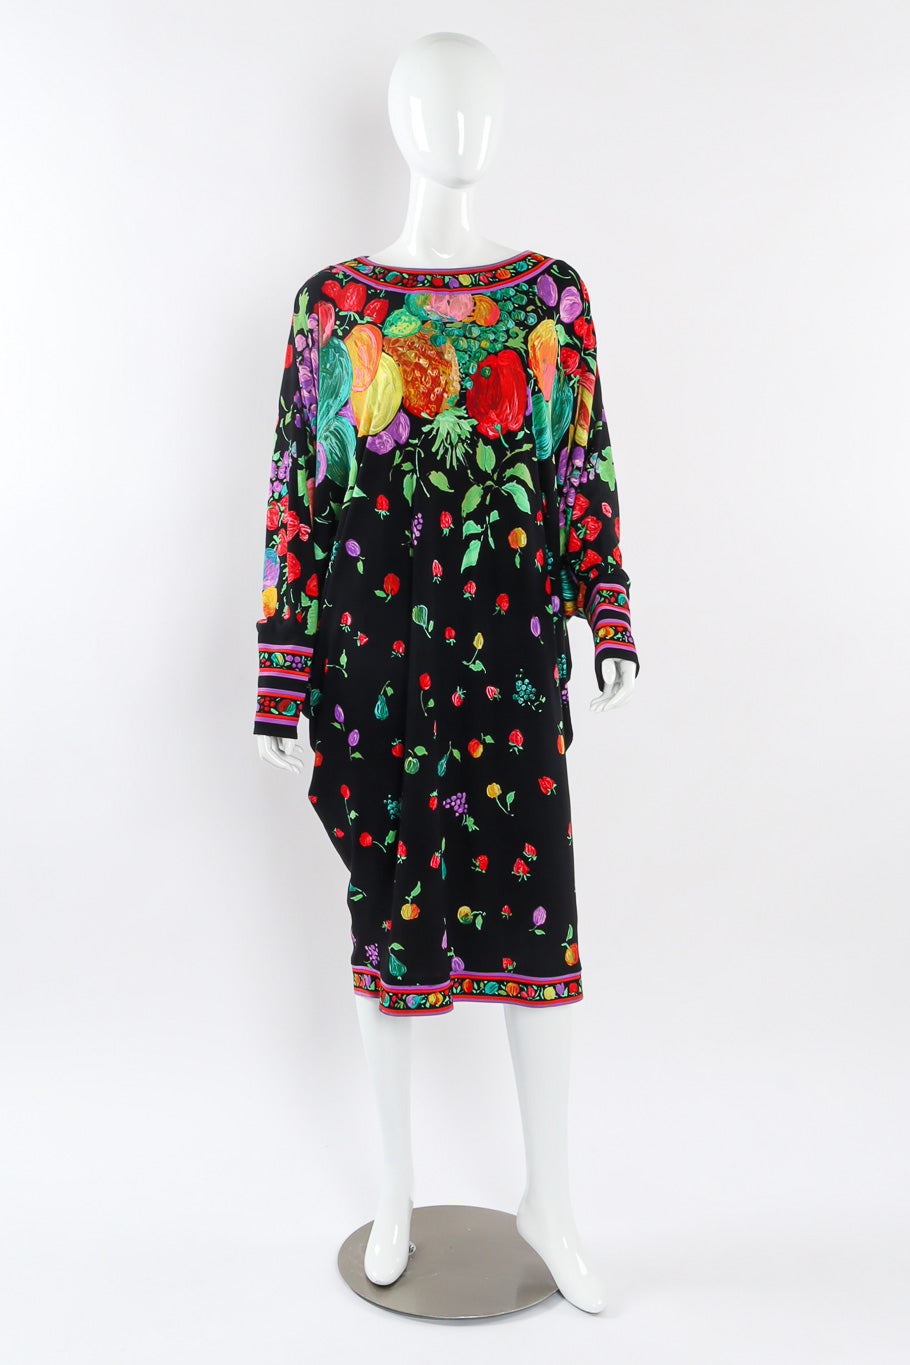 Vintage Leonard Fruit and Floral Dolman Dress Photo mannequin front @recessla